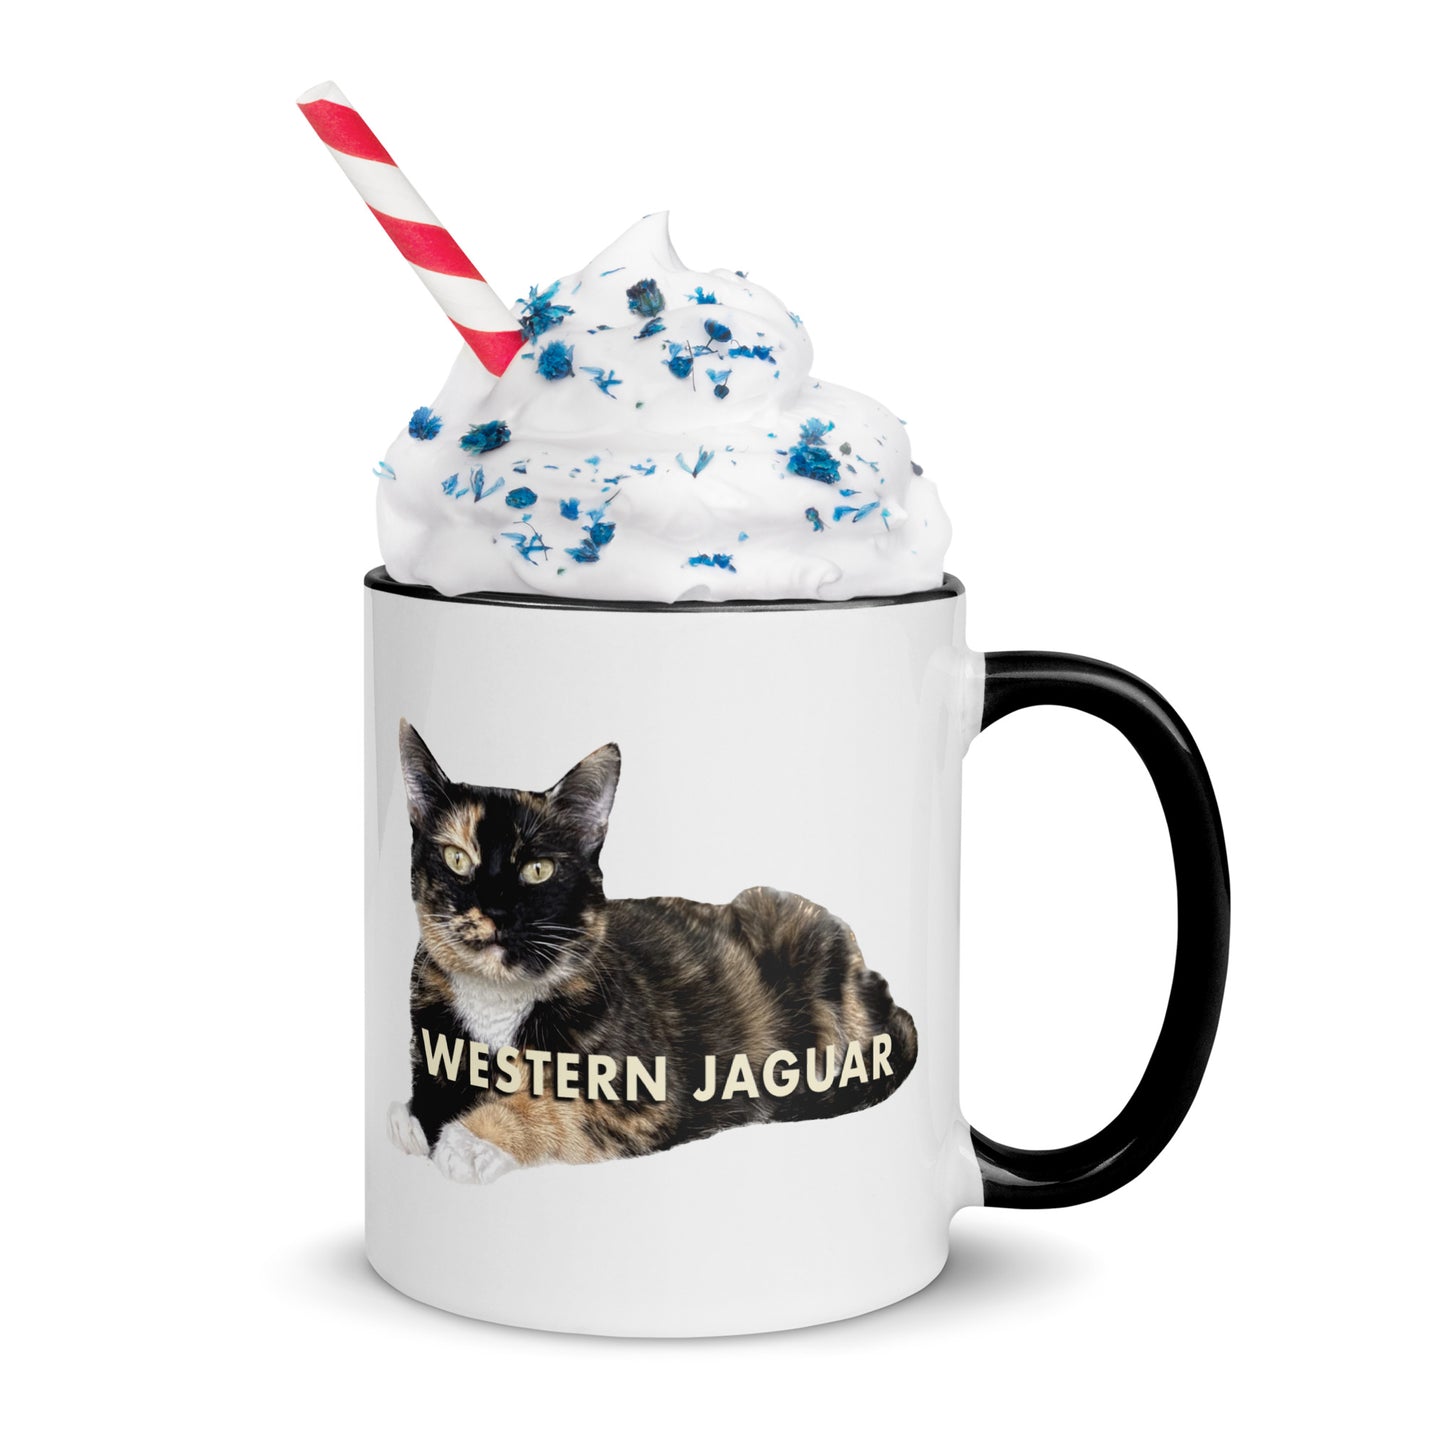 Western Jaguar Cat Mug With Color Inside